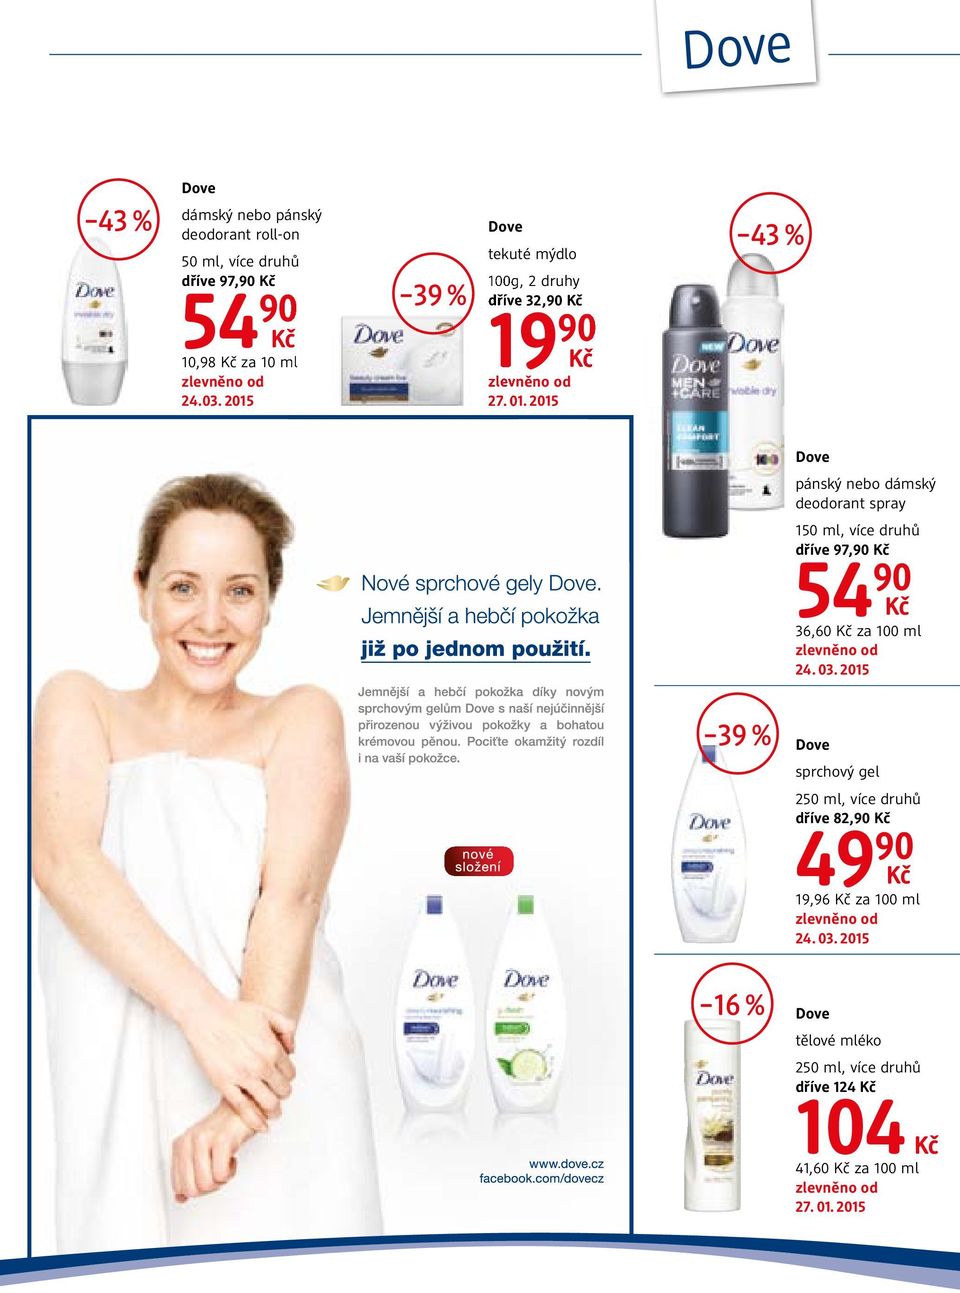 2015 19 90 43 % Dove pánský nebo dámský deodorant spray 150 ml, více druhů dříve 97,90 54 90 36,60 za 100 ml 39 % Dove sprchový